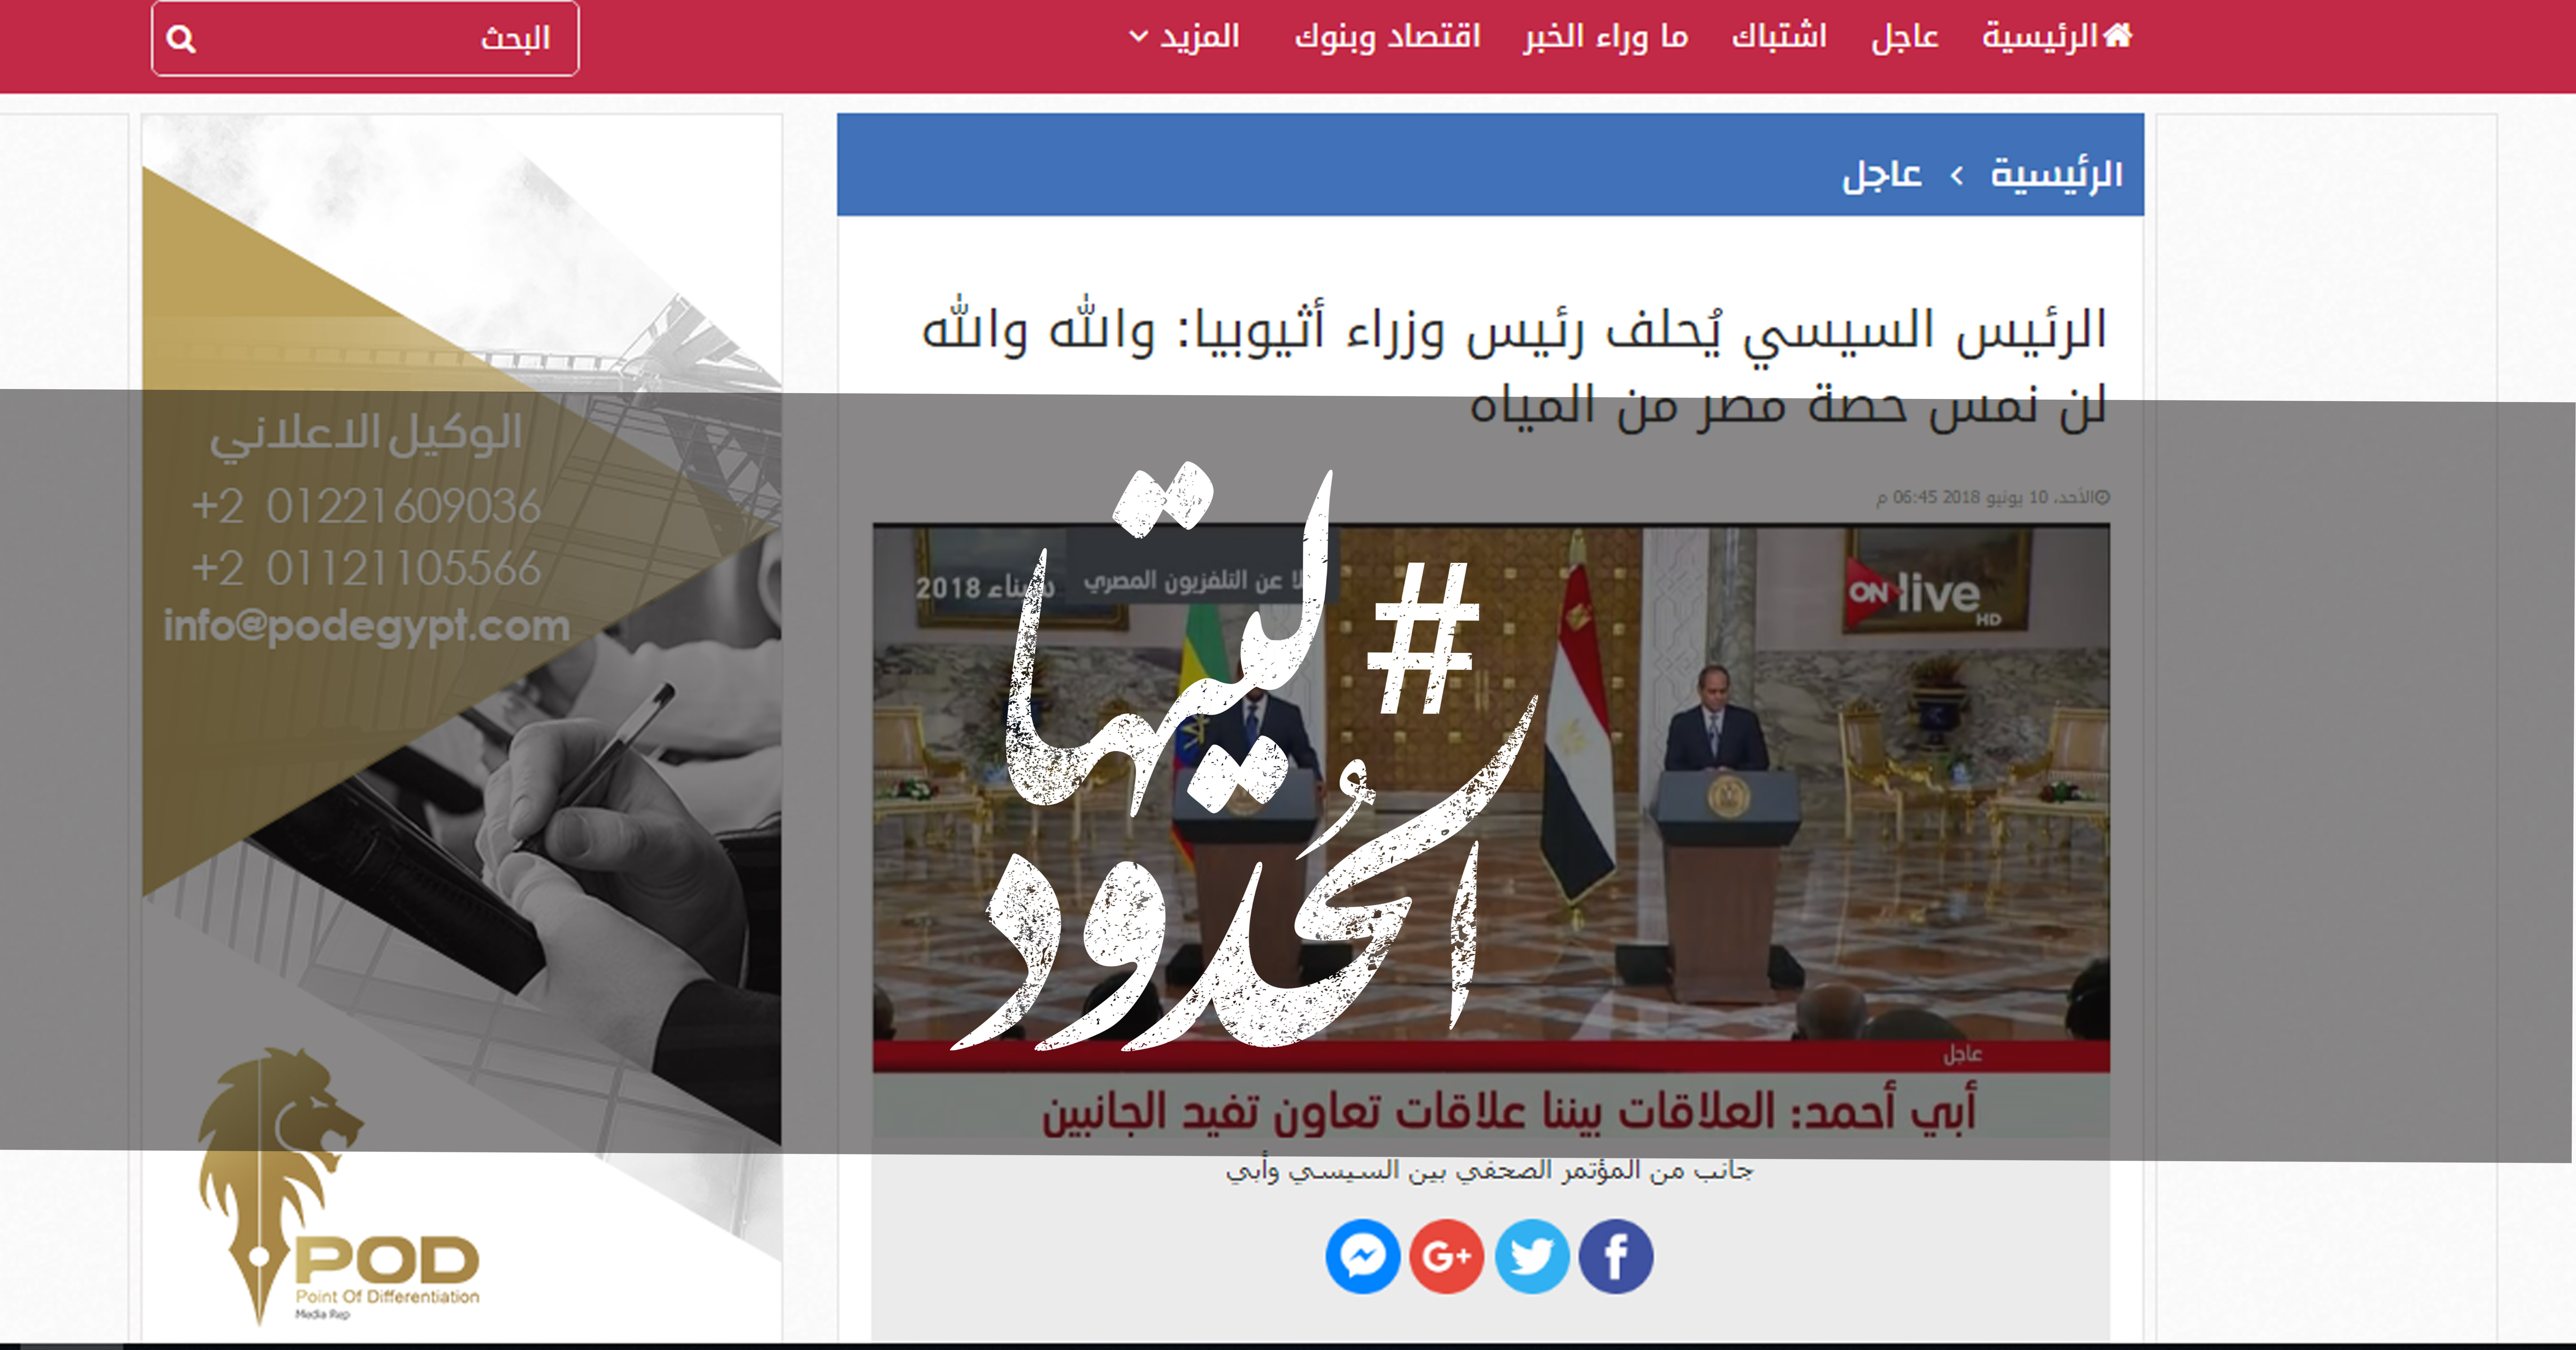 صورة الرئيس السيسي يُحلف رئيس وزراء أثيوبيا: والله والله لن نمس حصة مصر من المياه